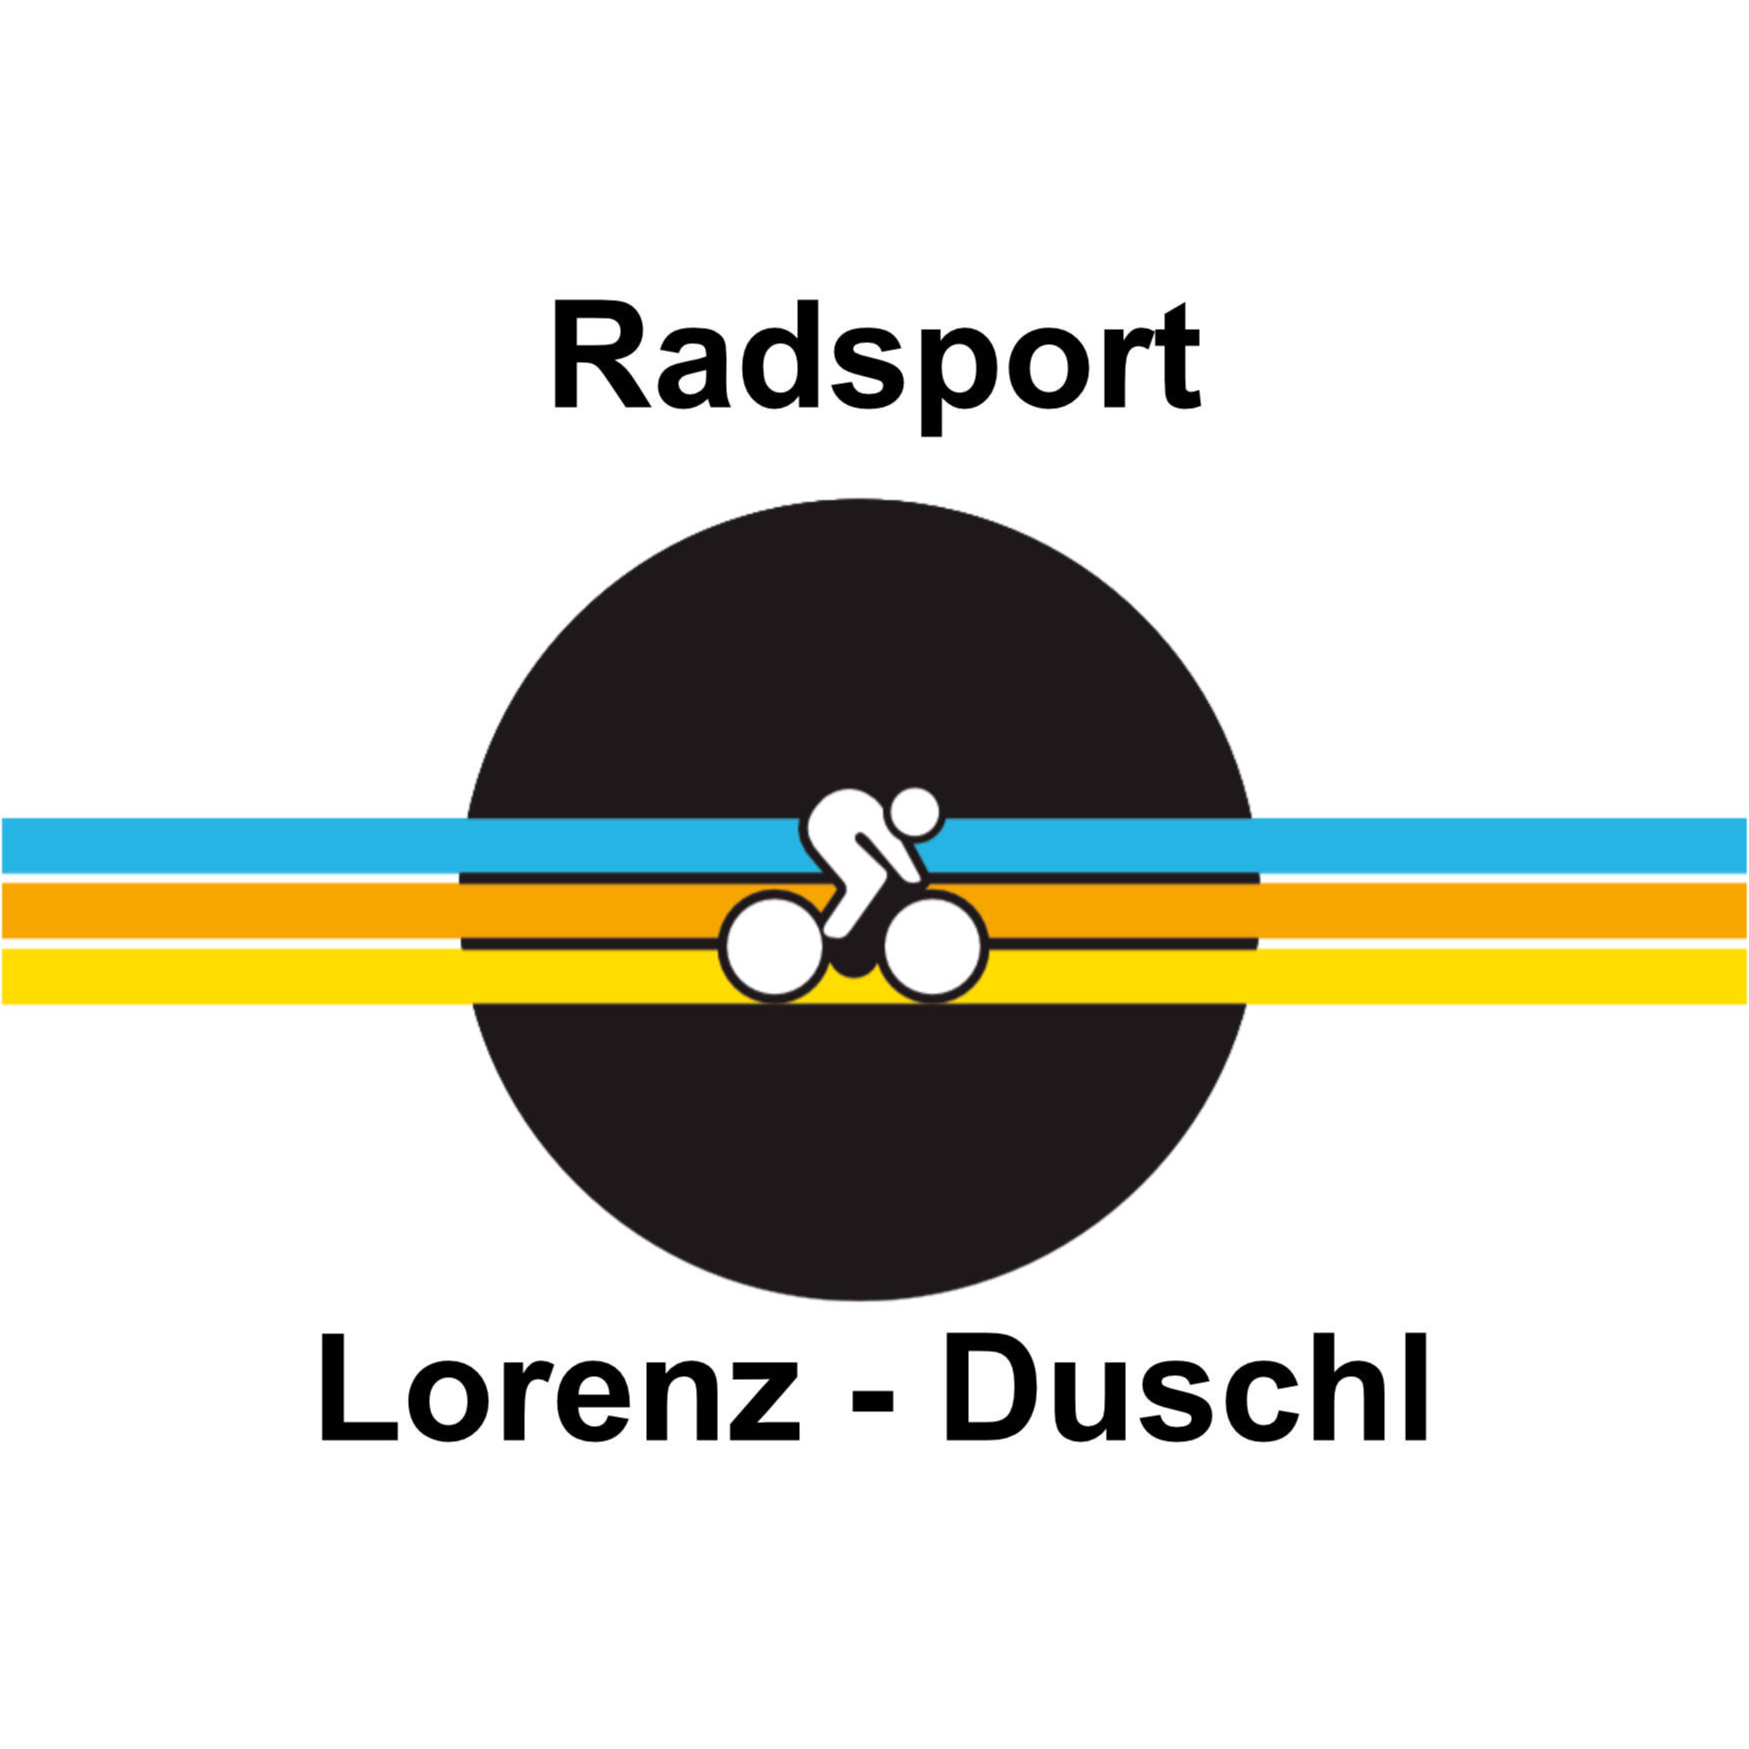 Radsport Lorenz